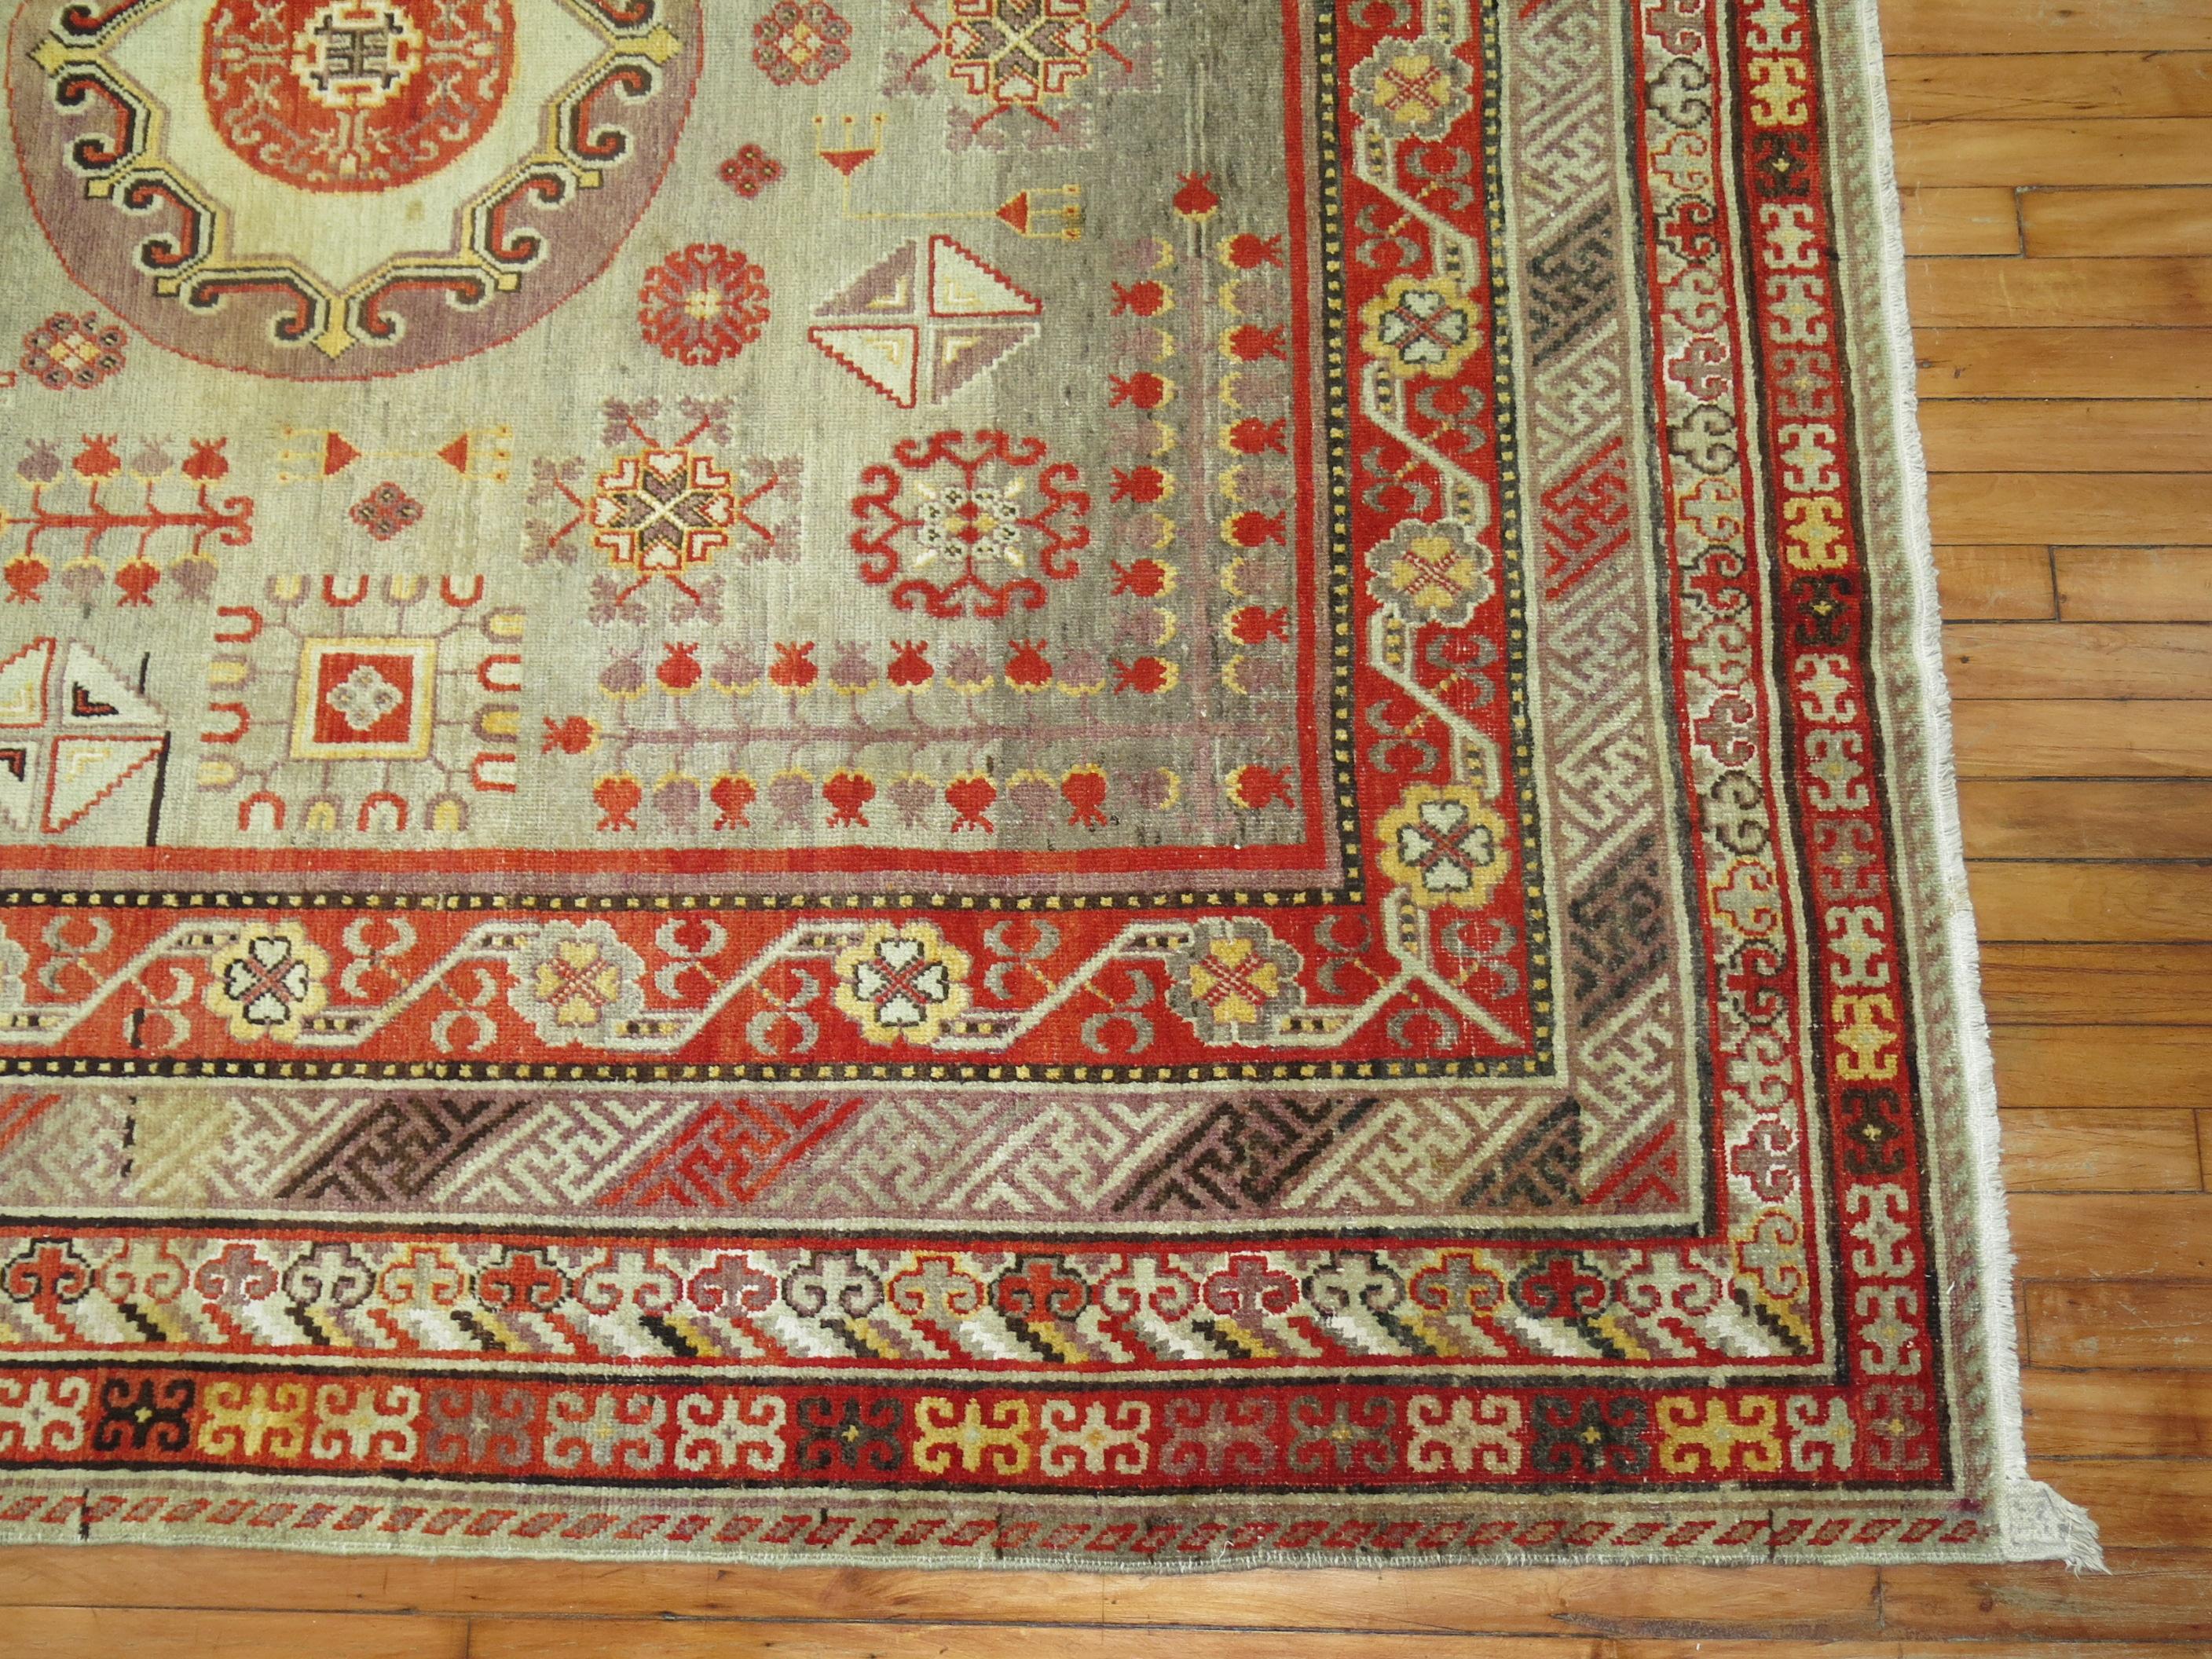 Großer antiker dekorativer Khotan-Teppich mit grauem Farbgrund aus dem frühen 20.

7'8'' x 15'10''

Die Teppiche werden seit dem 17. Jahrhundert hergestellt und erreichten ihren Höhepunkt im 18. und 19. Jahrhundert. Das Markenzeichen der